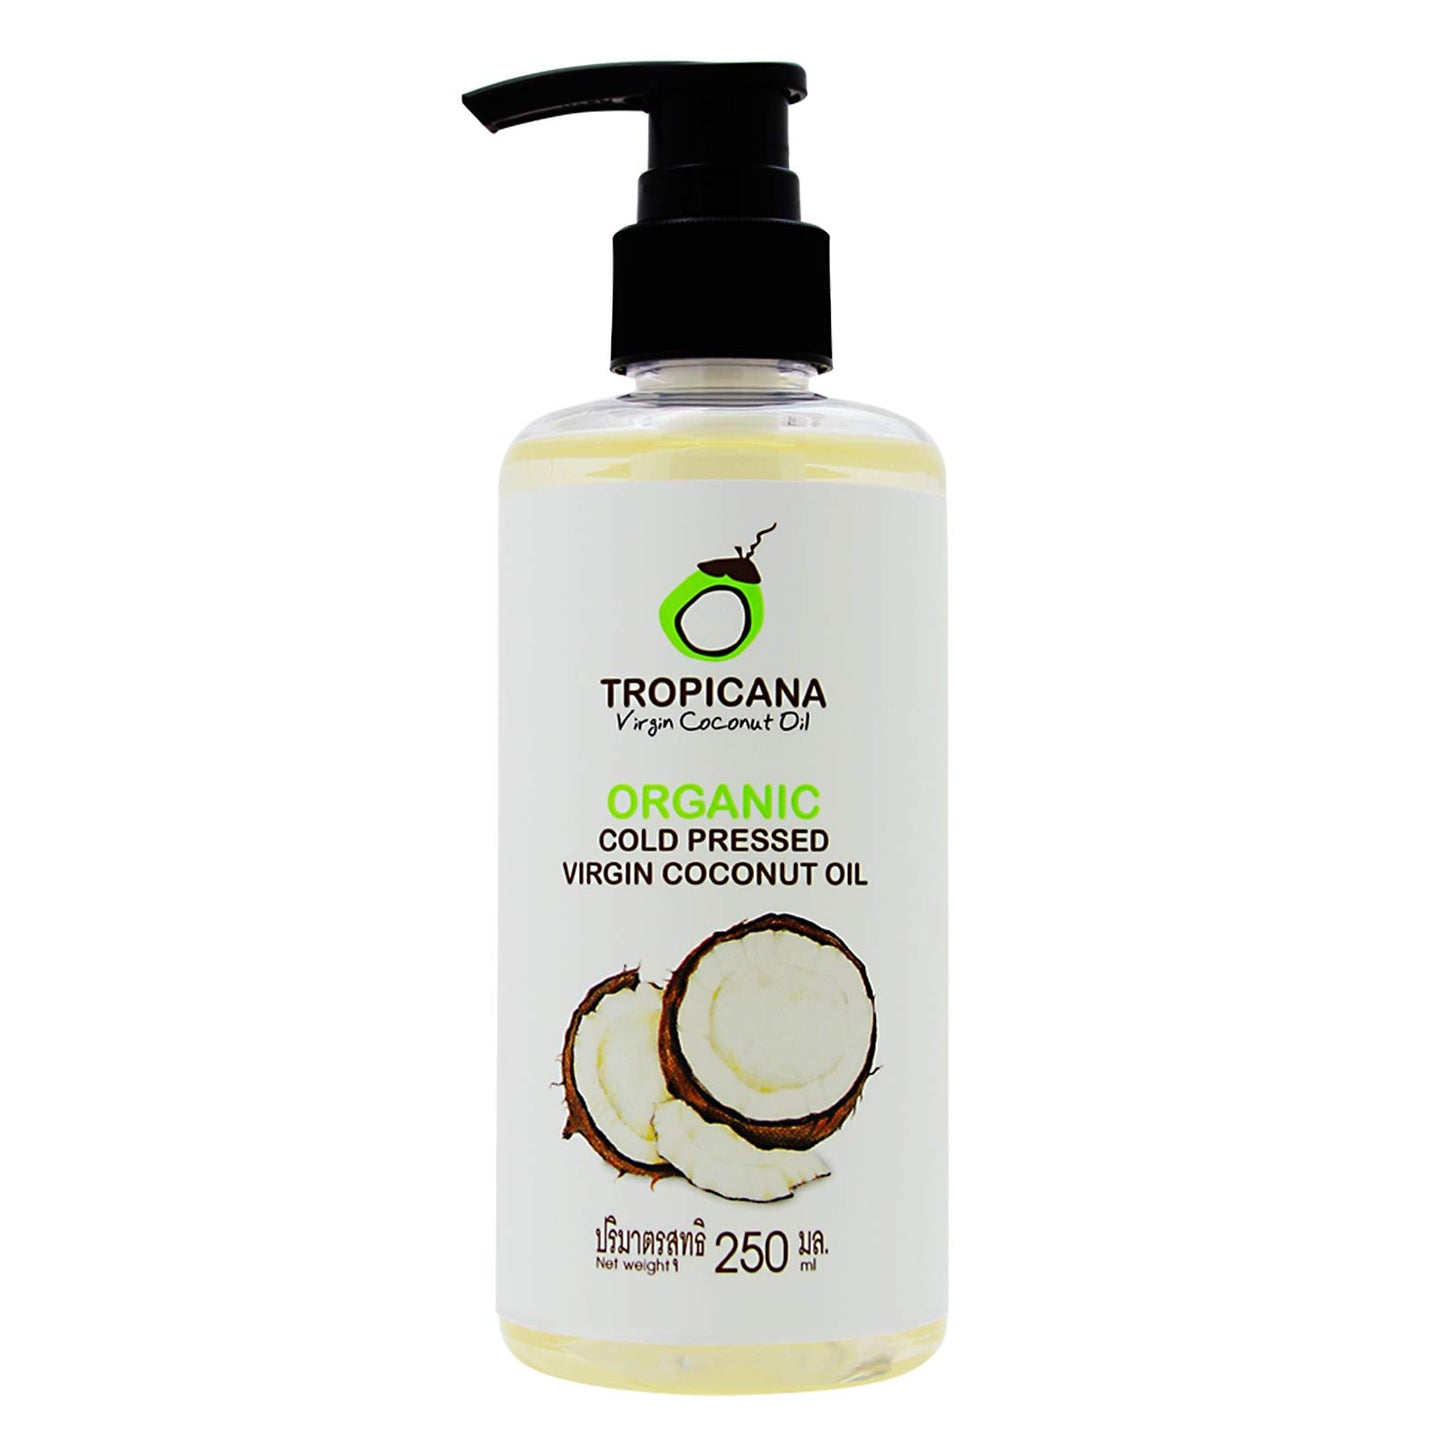 Tropicana Organic Cold Pressed Virgin Coconut Oil (250ml)